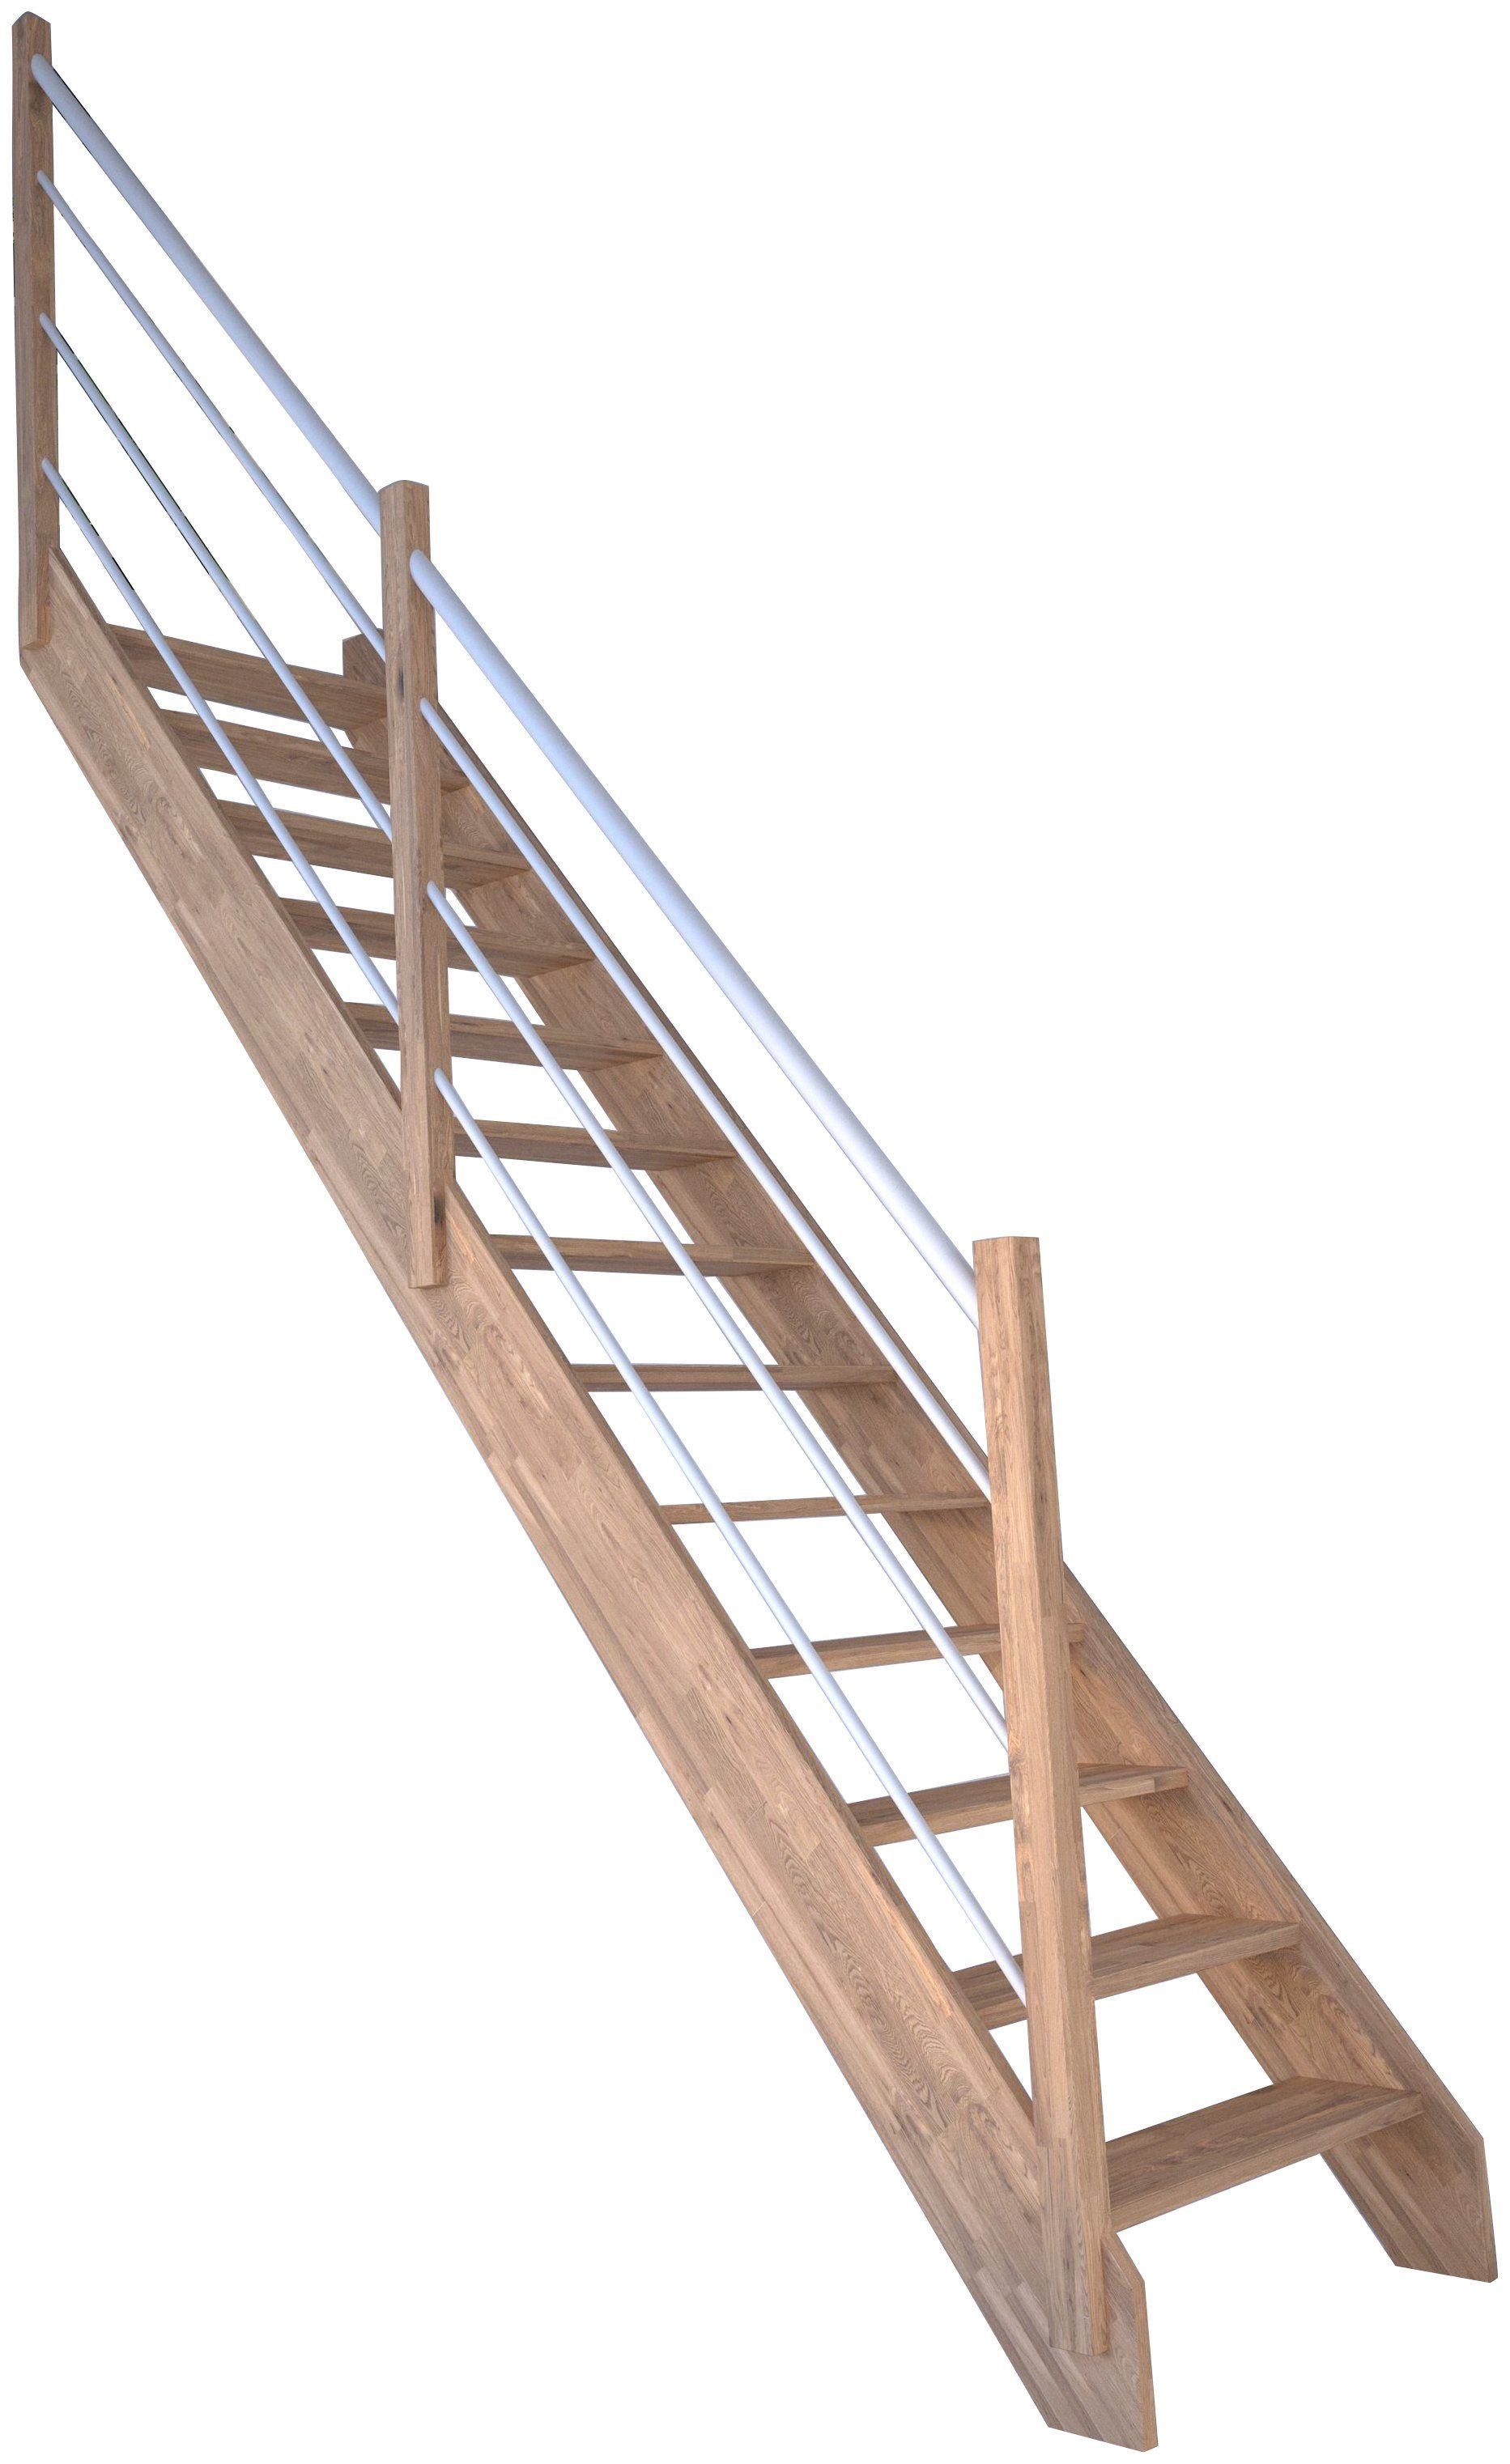 Starwood Raumspartreppe Massivholz Rhodos, Holz-Edelstahl Weiß Links, für Geschosshöhen bis 300 cm, Stufen offen, Durchgehende Wangenteile